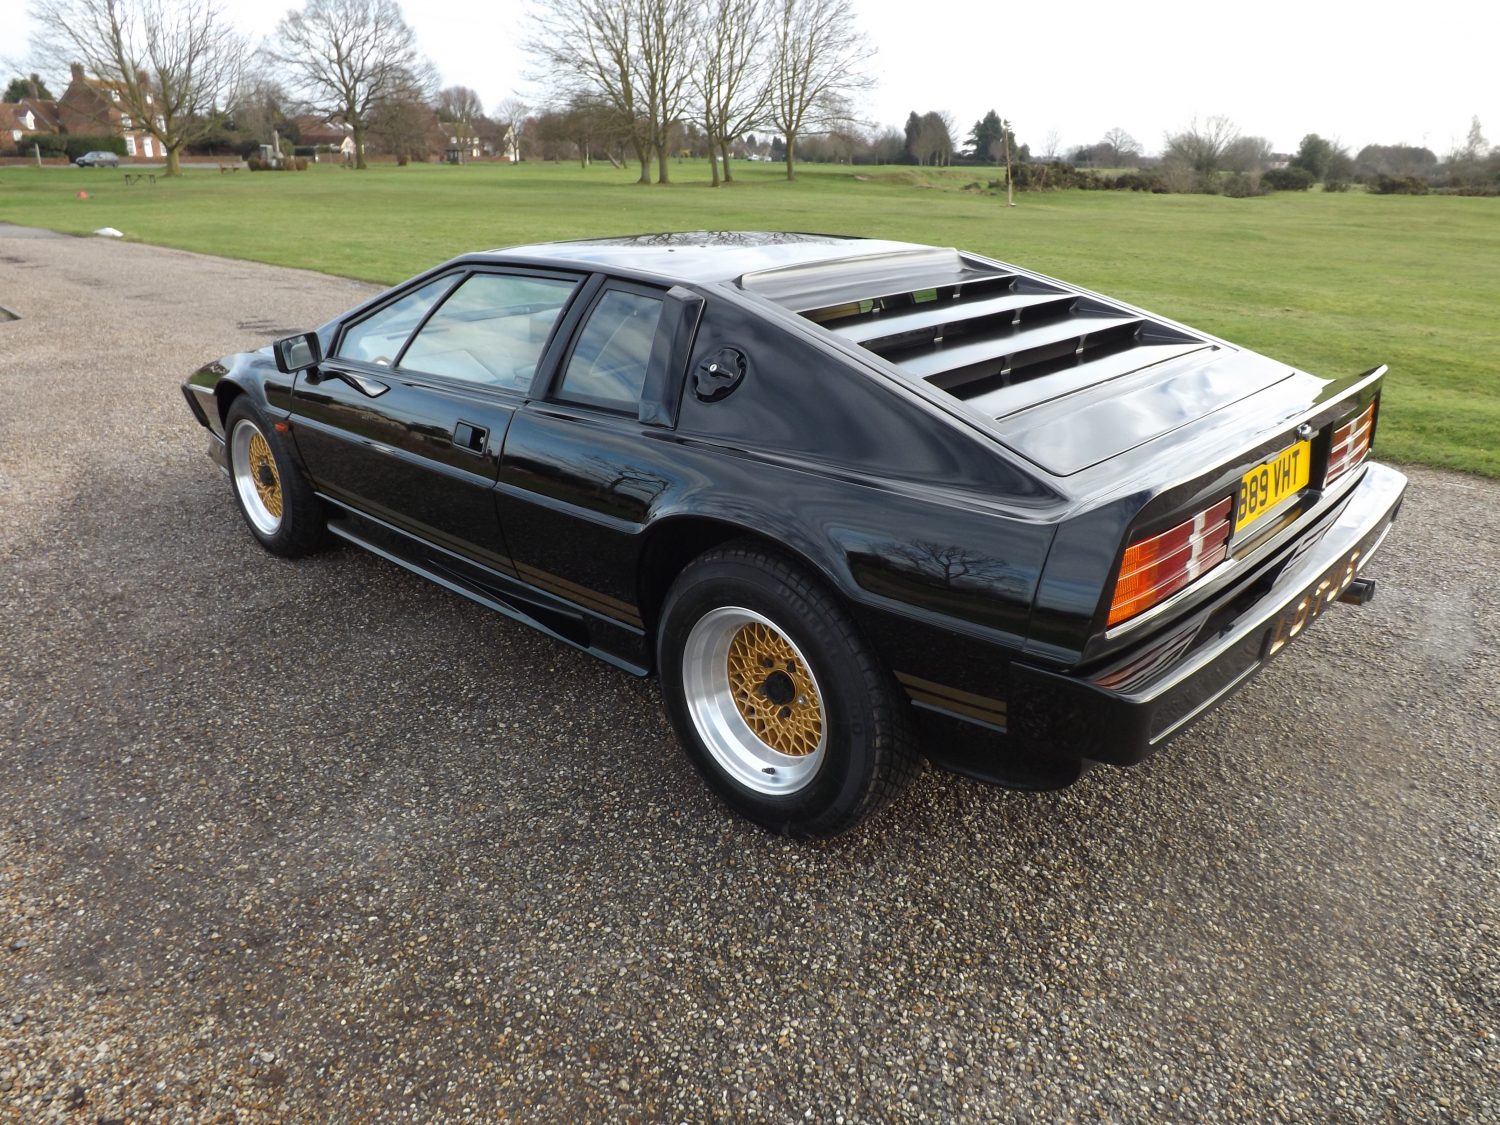 1985 Lotus Esprit Turbo - Bridge Classic Cars : Bridge Classic Cars